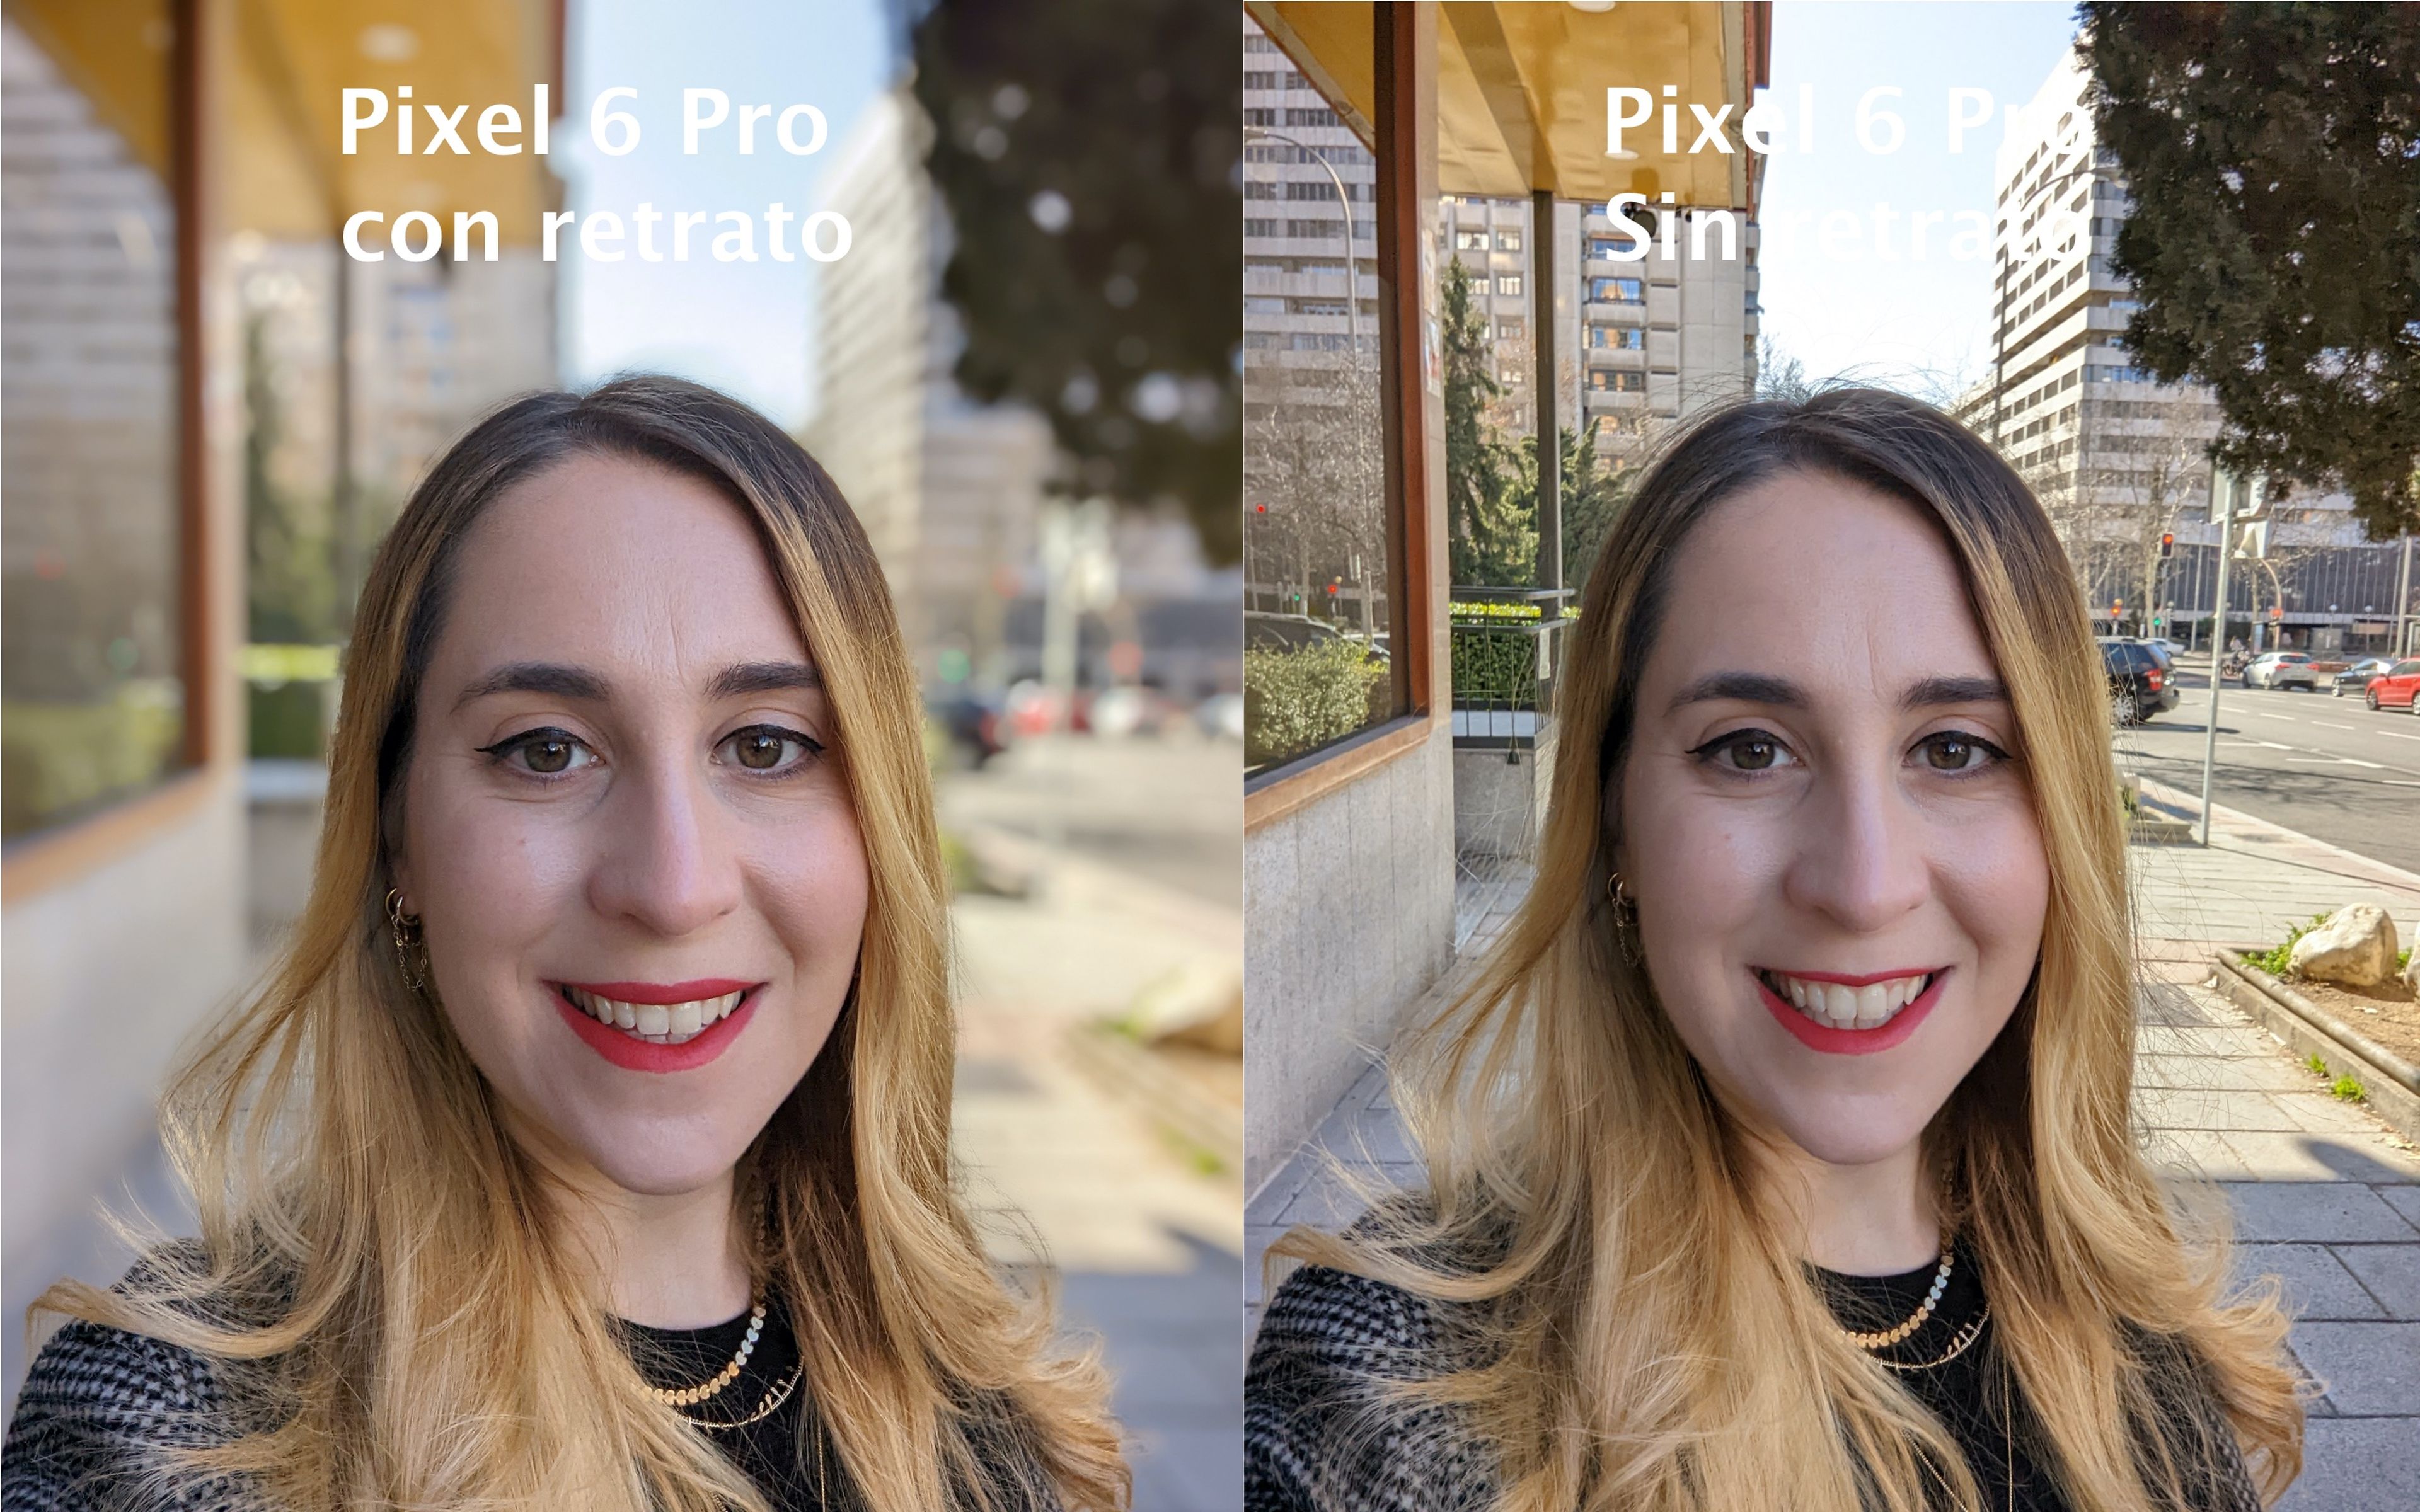 Pixel 6 Pro selfie